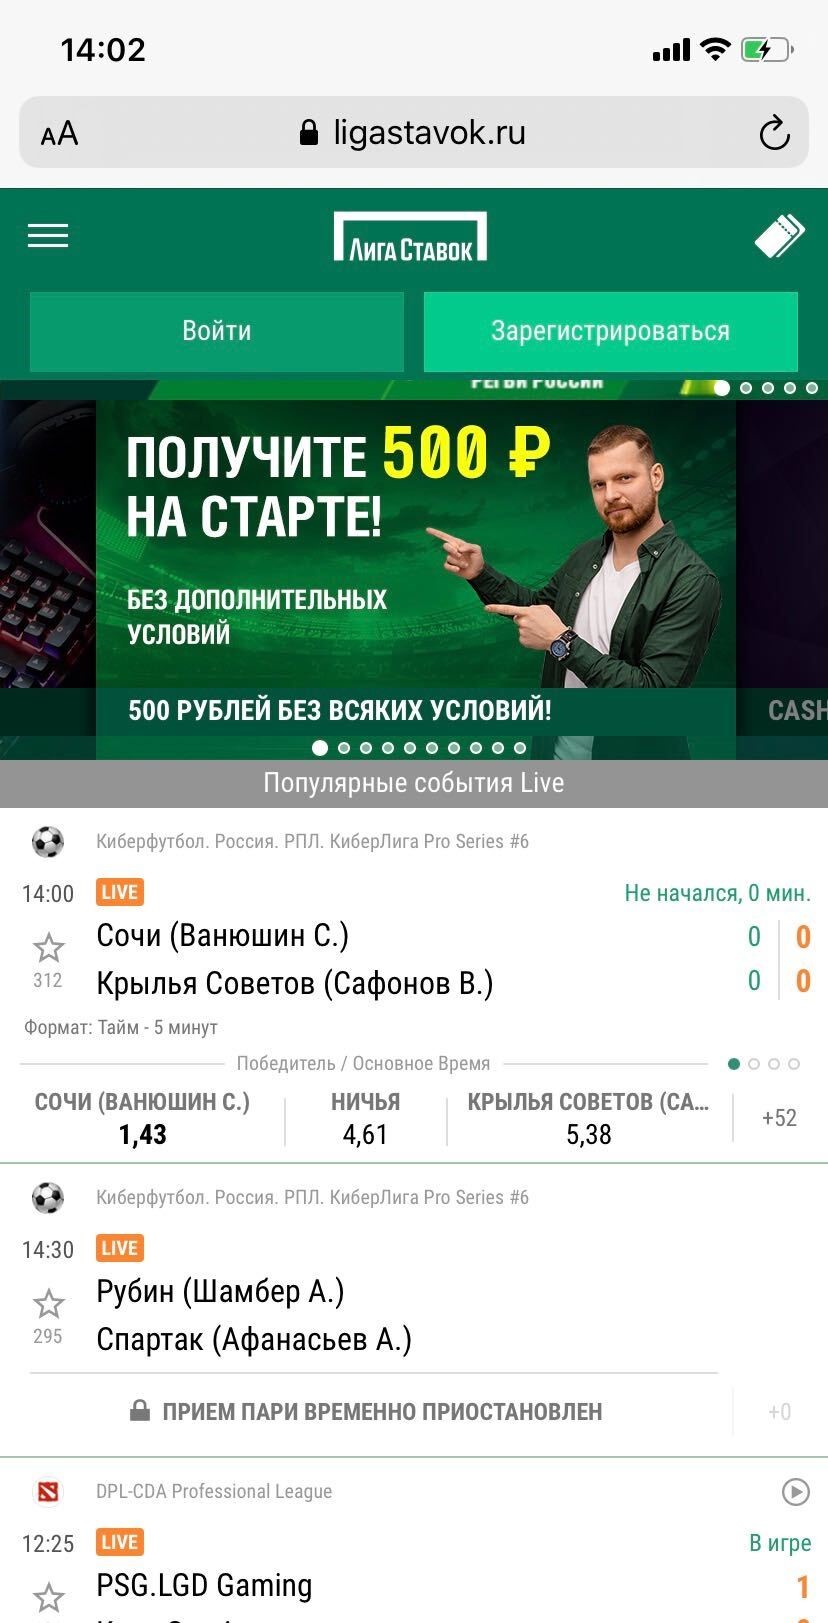 Бк лига ставок сайт официальный сайт покер онлайн на русском языке на деньги скачать